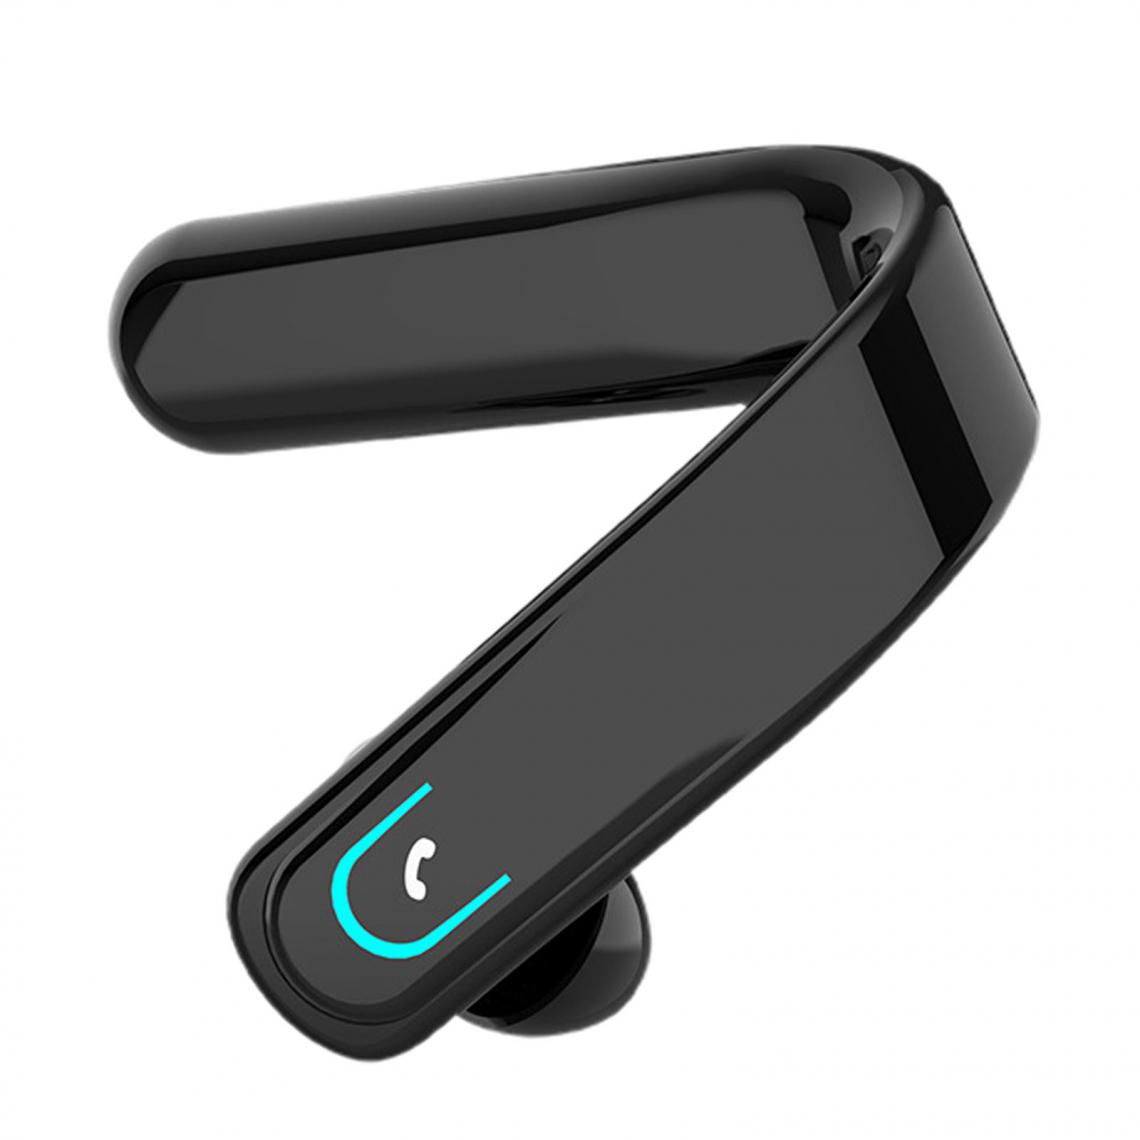 marque generique - Chargement de casque Bluetooth sans fil Bluetooth - Micro-Casque